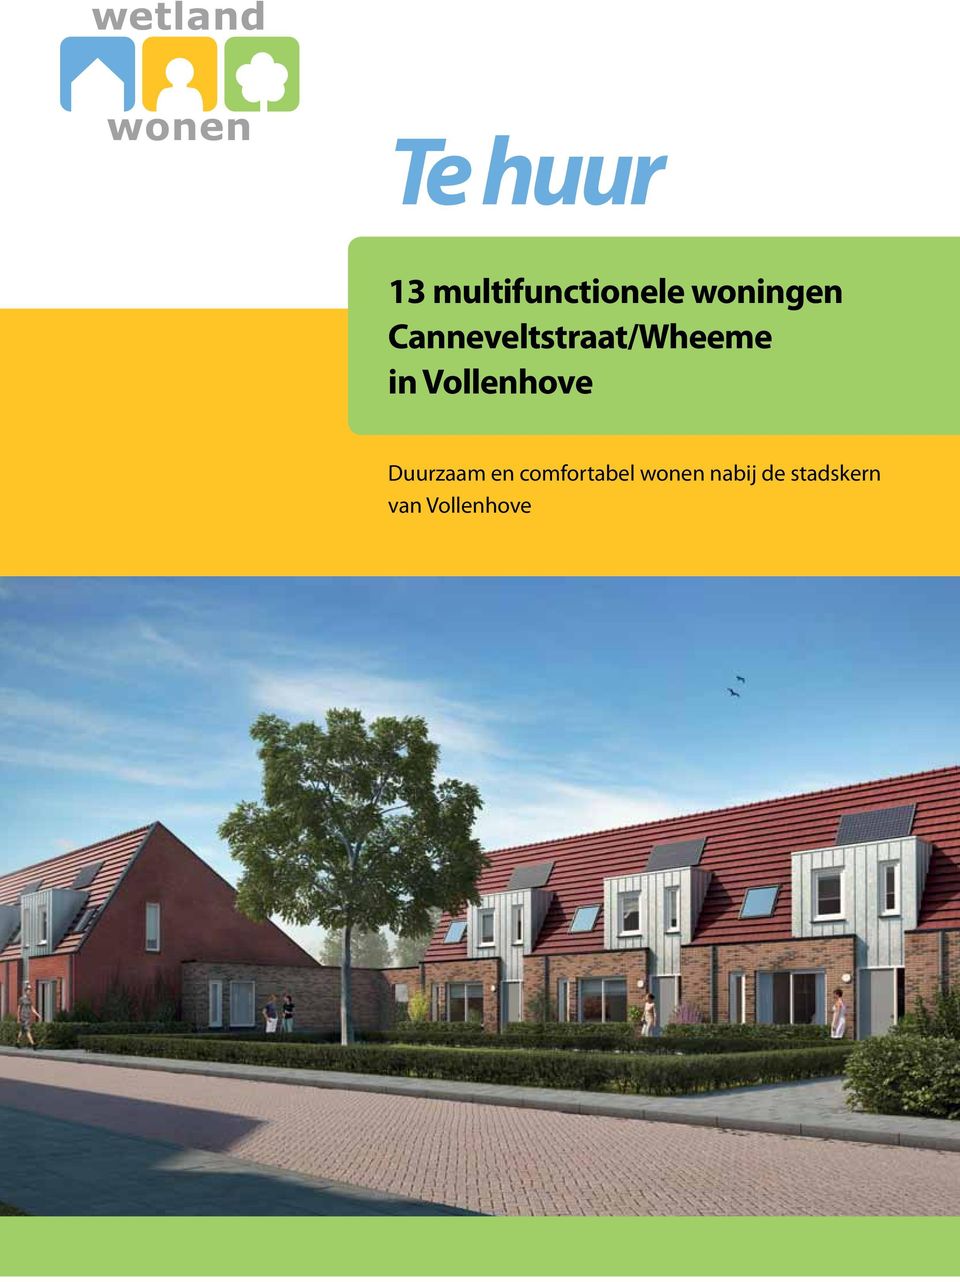 nl info@wetlandwonen.